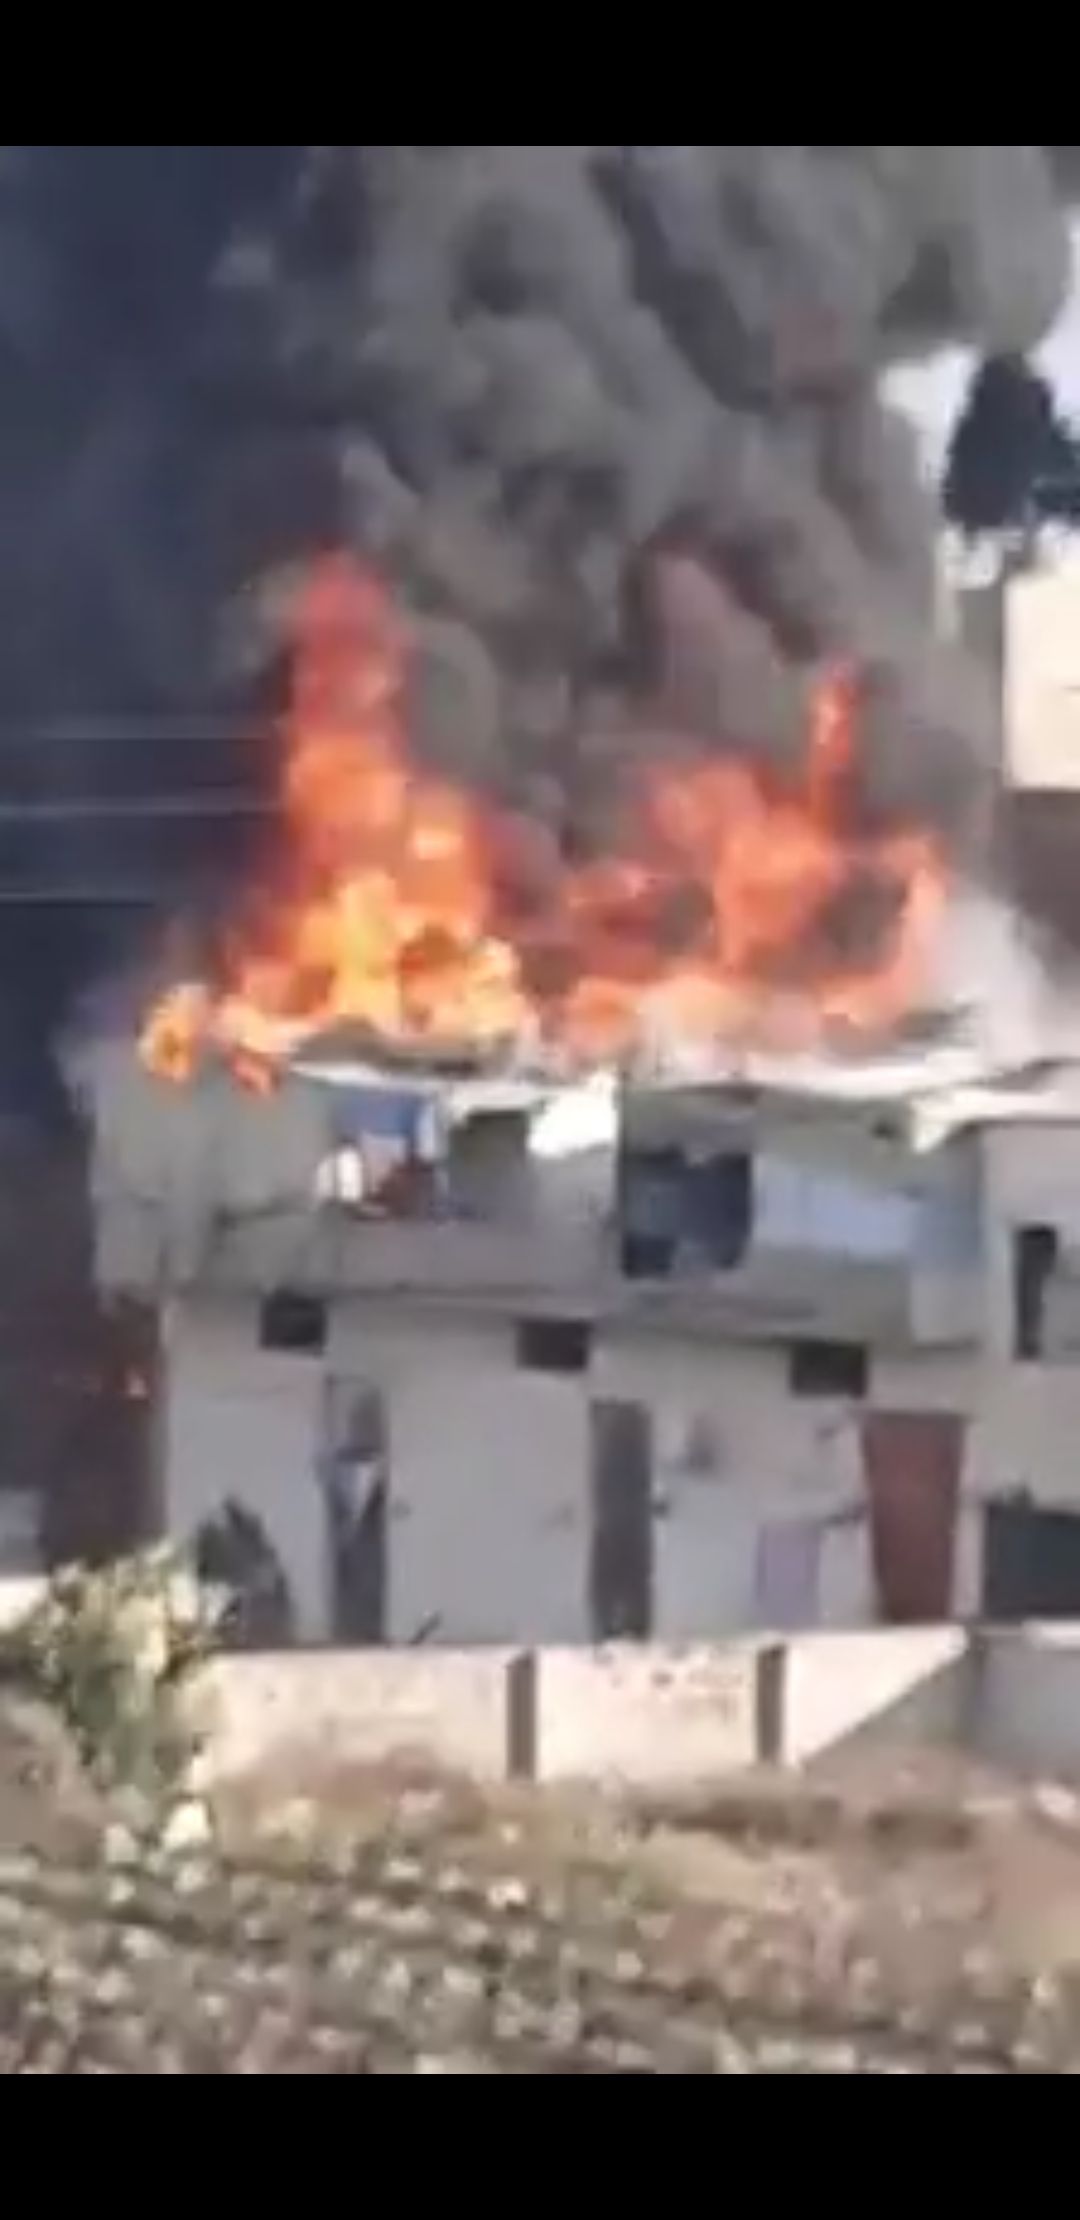 حريق كبير يلتهم منازل وخيم النازحين السوريين في العاقبية جنوب لبنان ، والدفاع المدني يحاول إخماد النيران..(*فيديو)